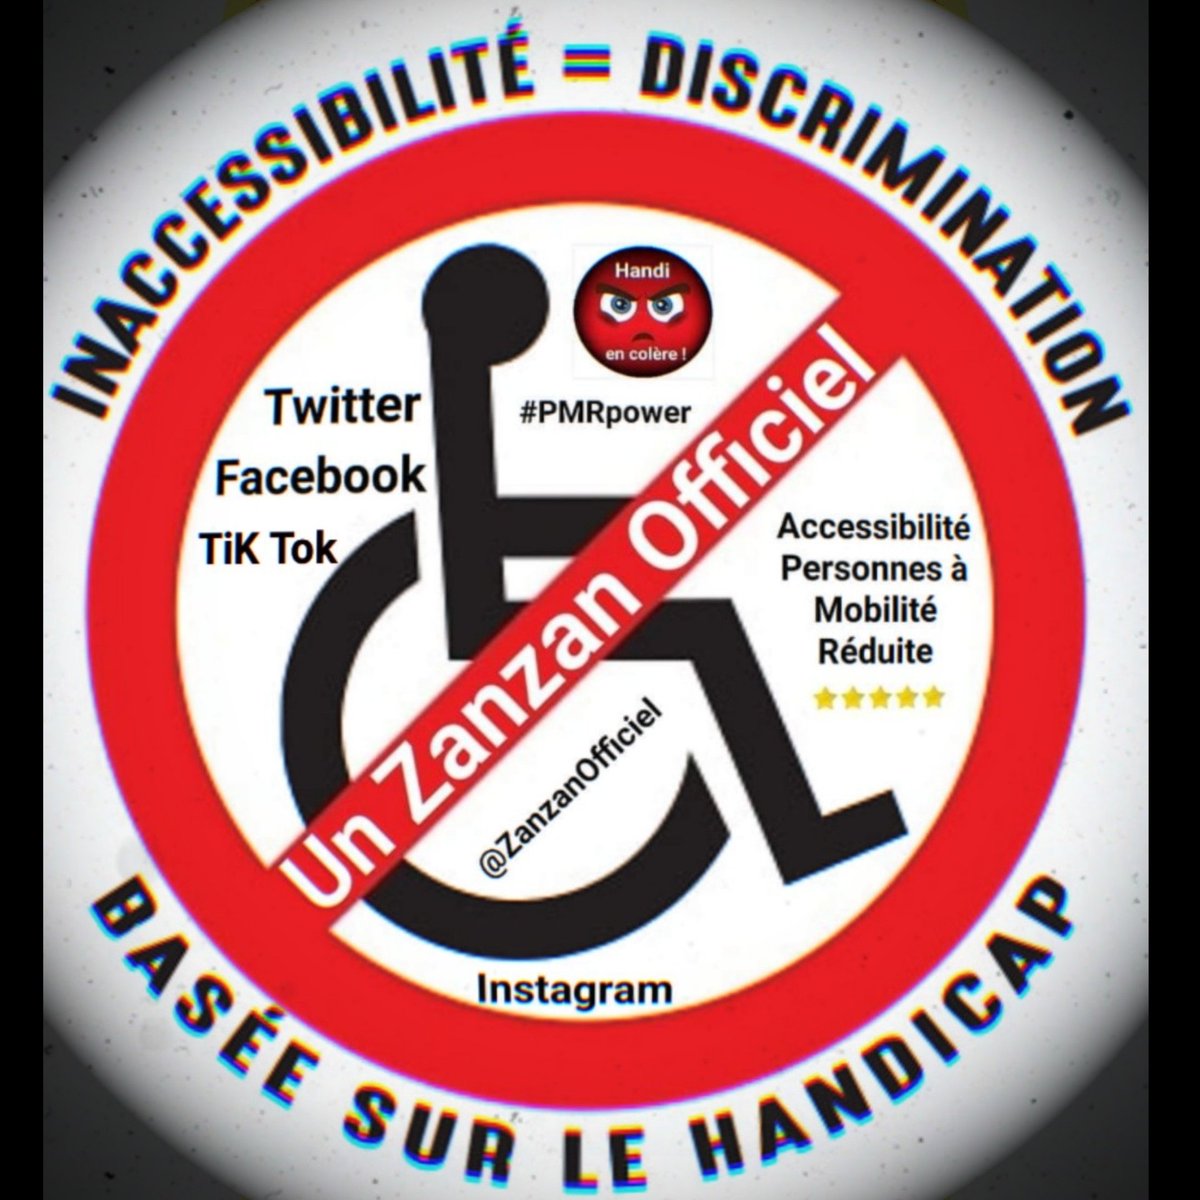 Likez @ZanzanOfficiel et militons ensemble pour imposer l'Accessibilité Handicapés #PMR à nos fauteuils roulants partout en France !
#NousSommesPMR #NousSommesEnFauteuilRoulant #HandicapVisible #Handicap